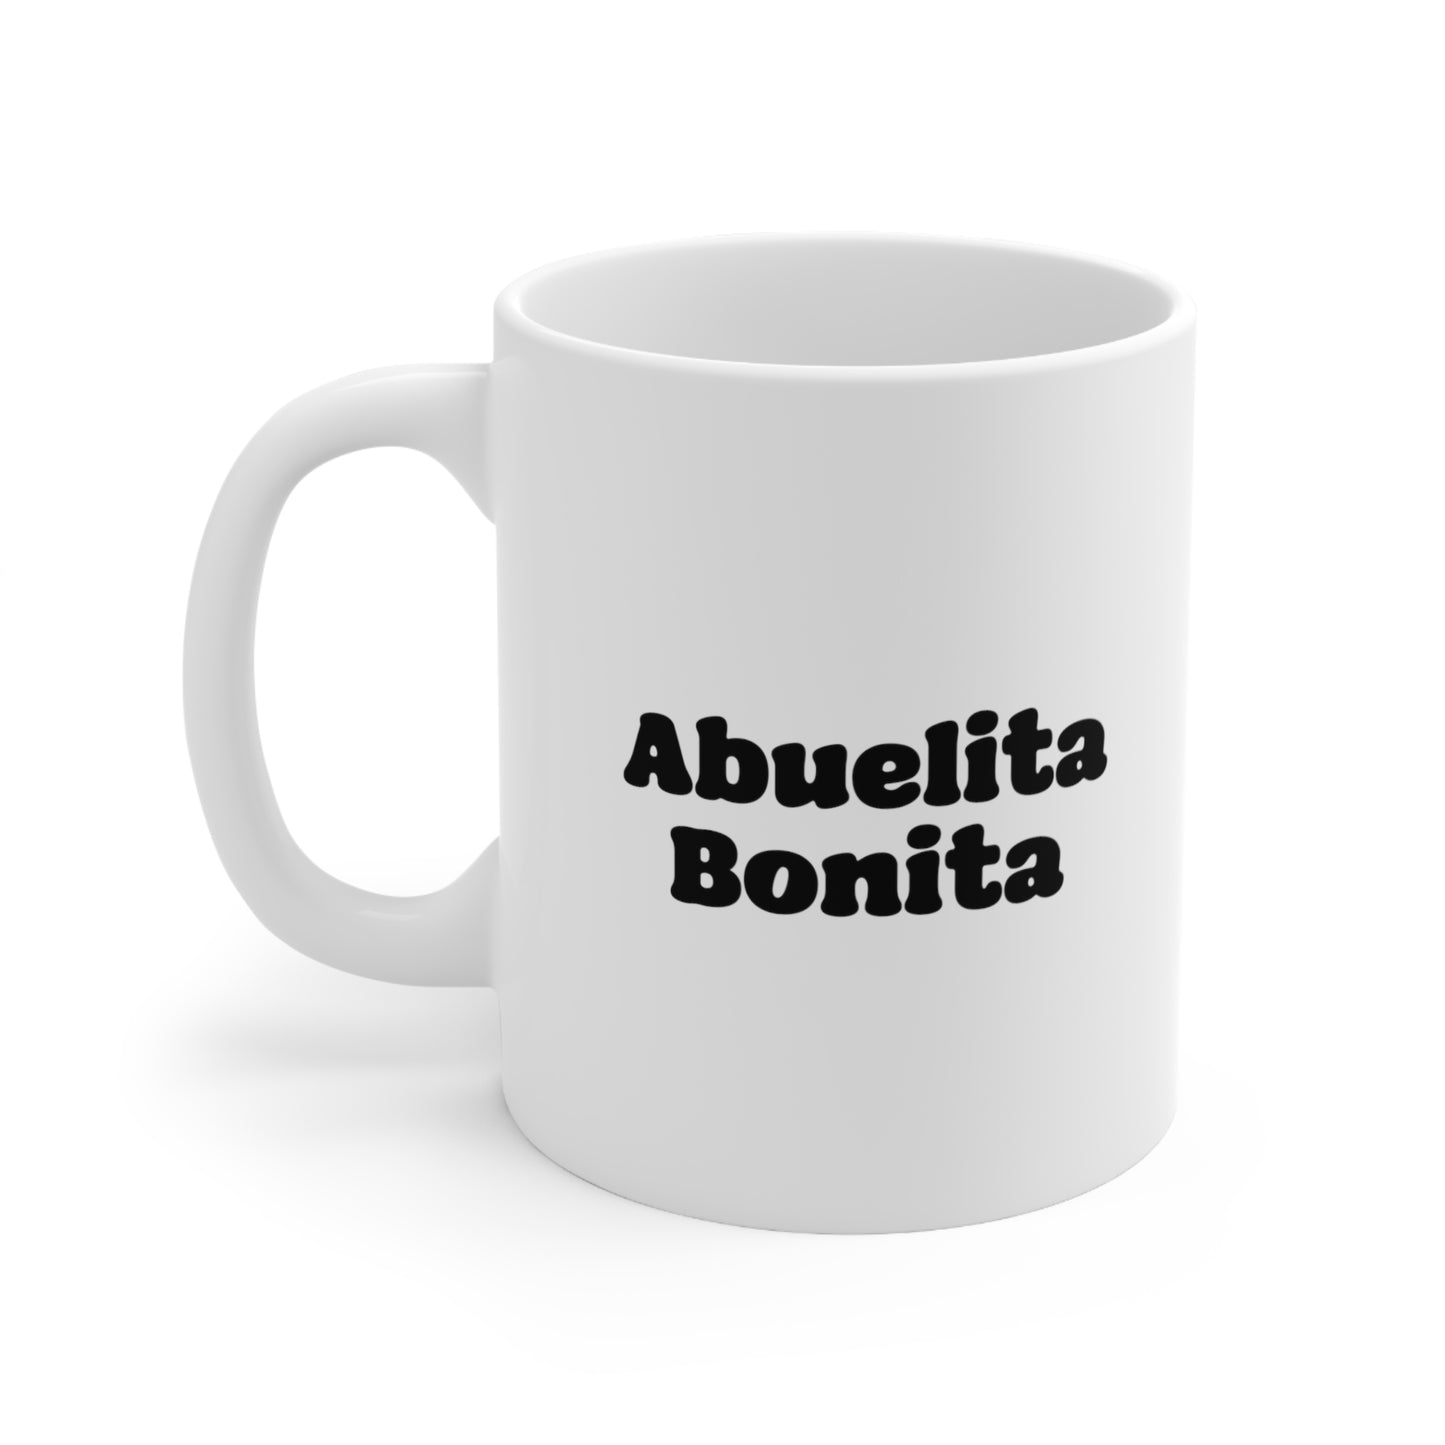 Abuelita Bonita Coffee Mug